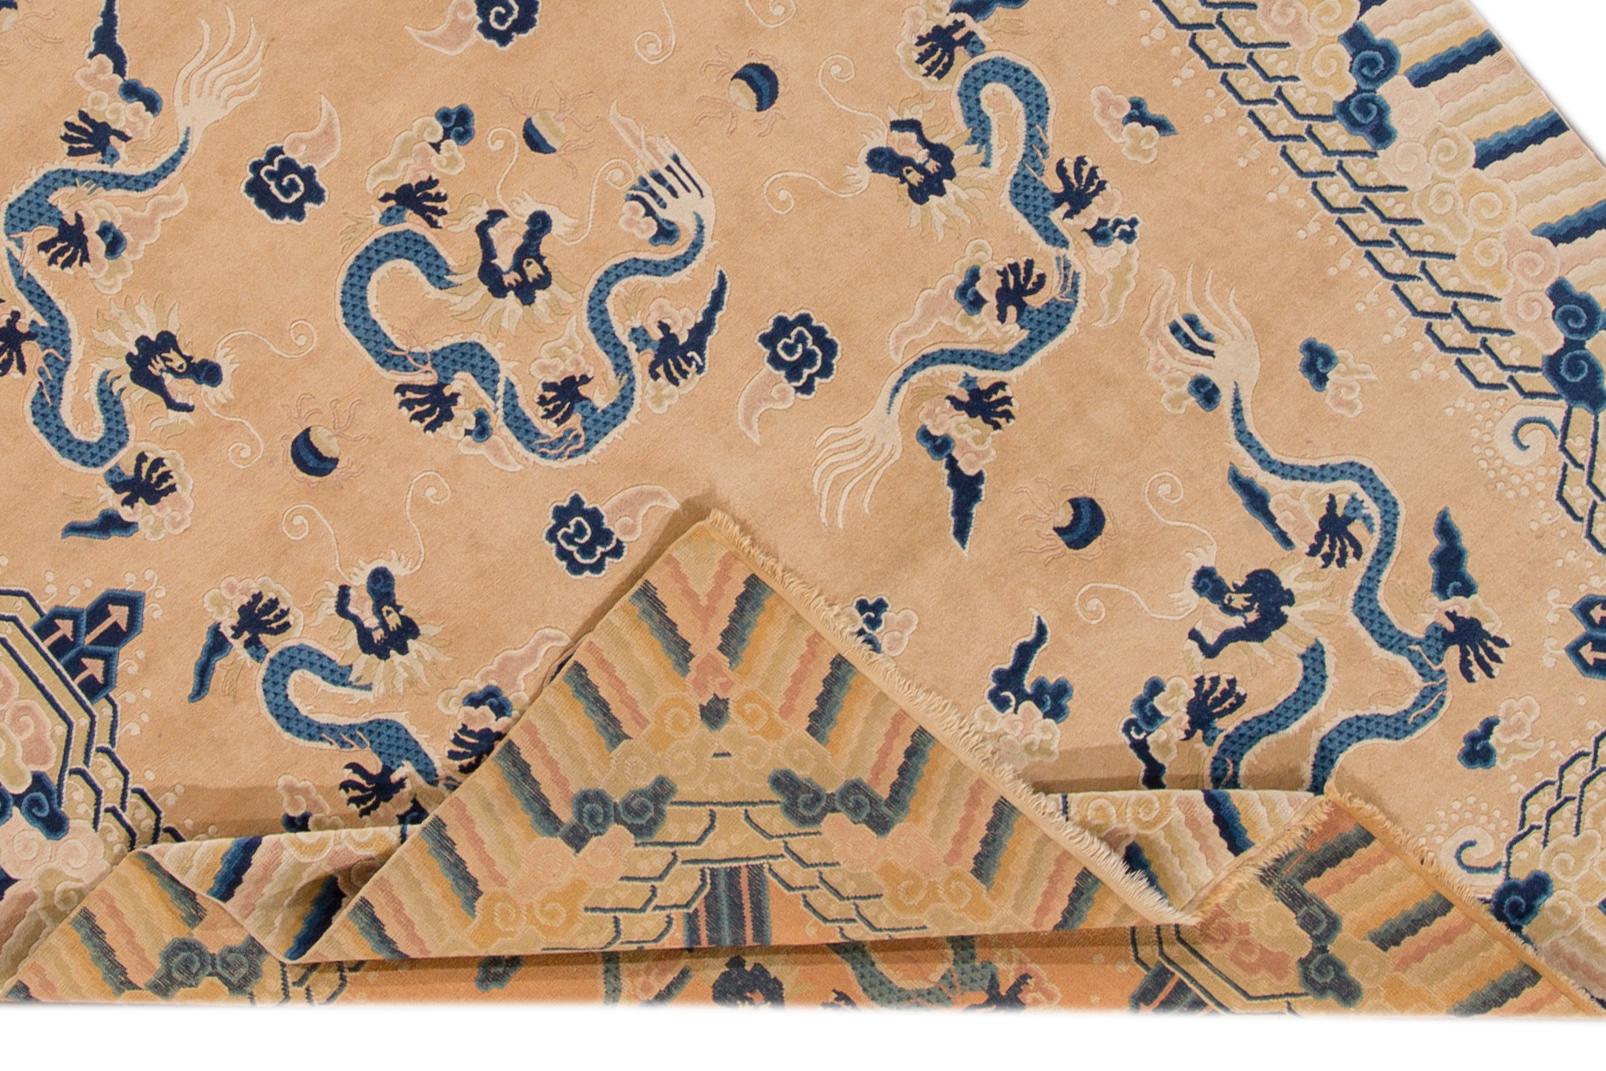 Un magnifique tapis chinois ancien en laine nouée à la main, avec un champ de pêche et des accents bleus sur tout le motif du dragon chinois.

Ce tapis mesure : 6'7